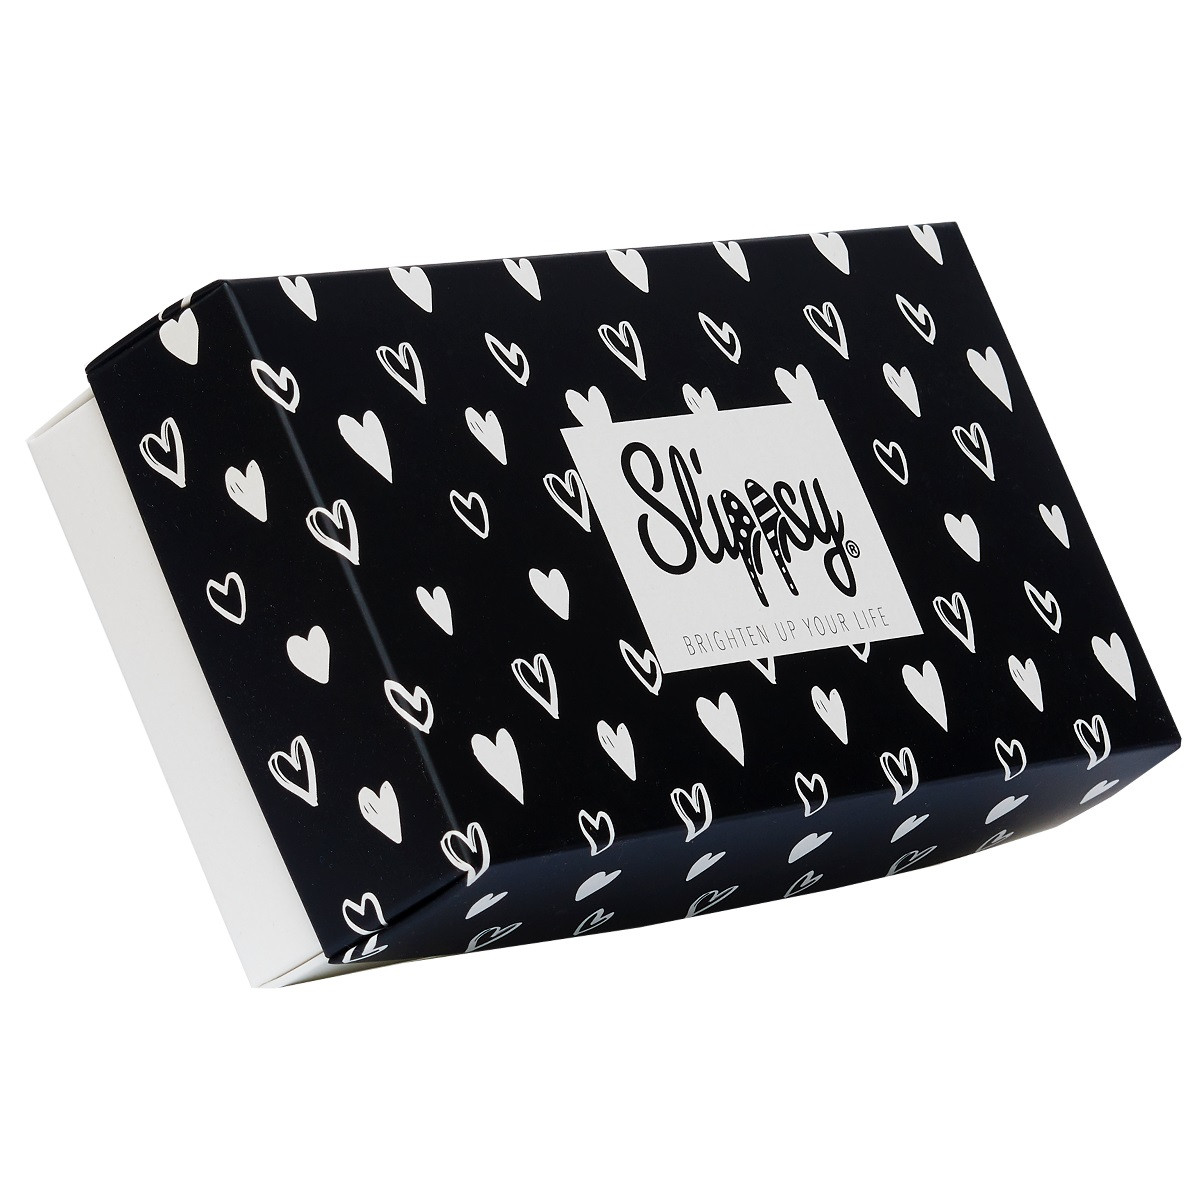 E-shop Slippsy Twilight box set